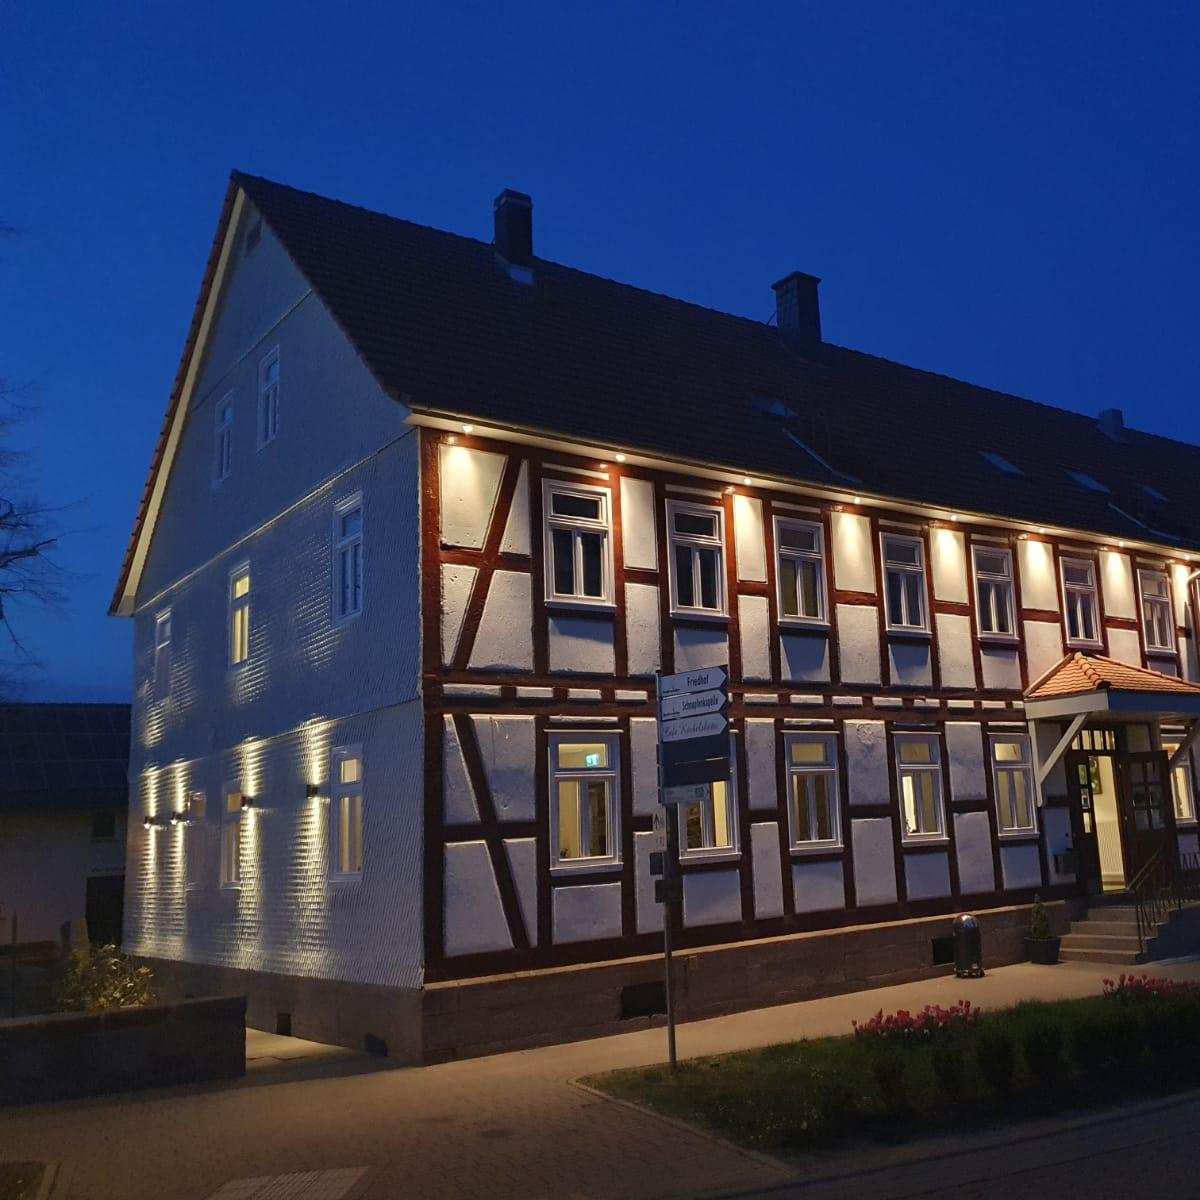 Restaurant "Landgasthof Zur Linde" in Großenlüder